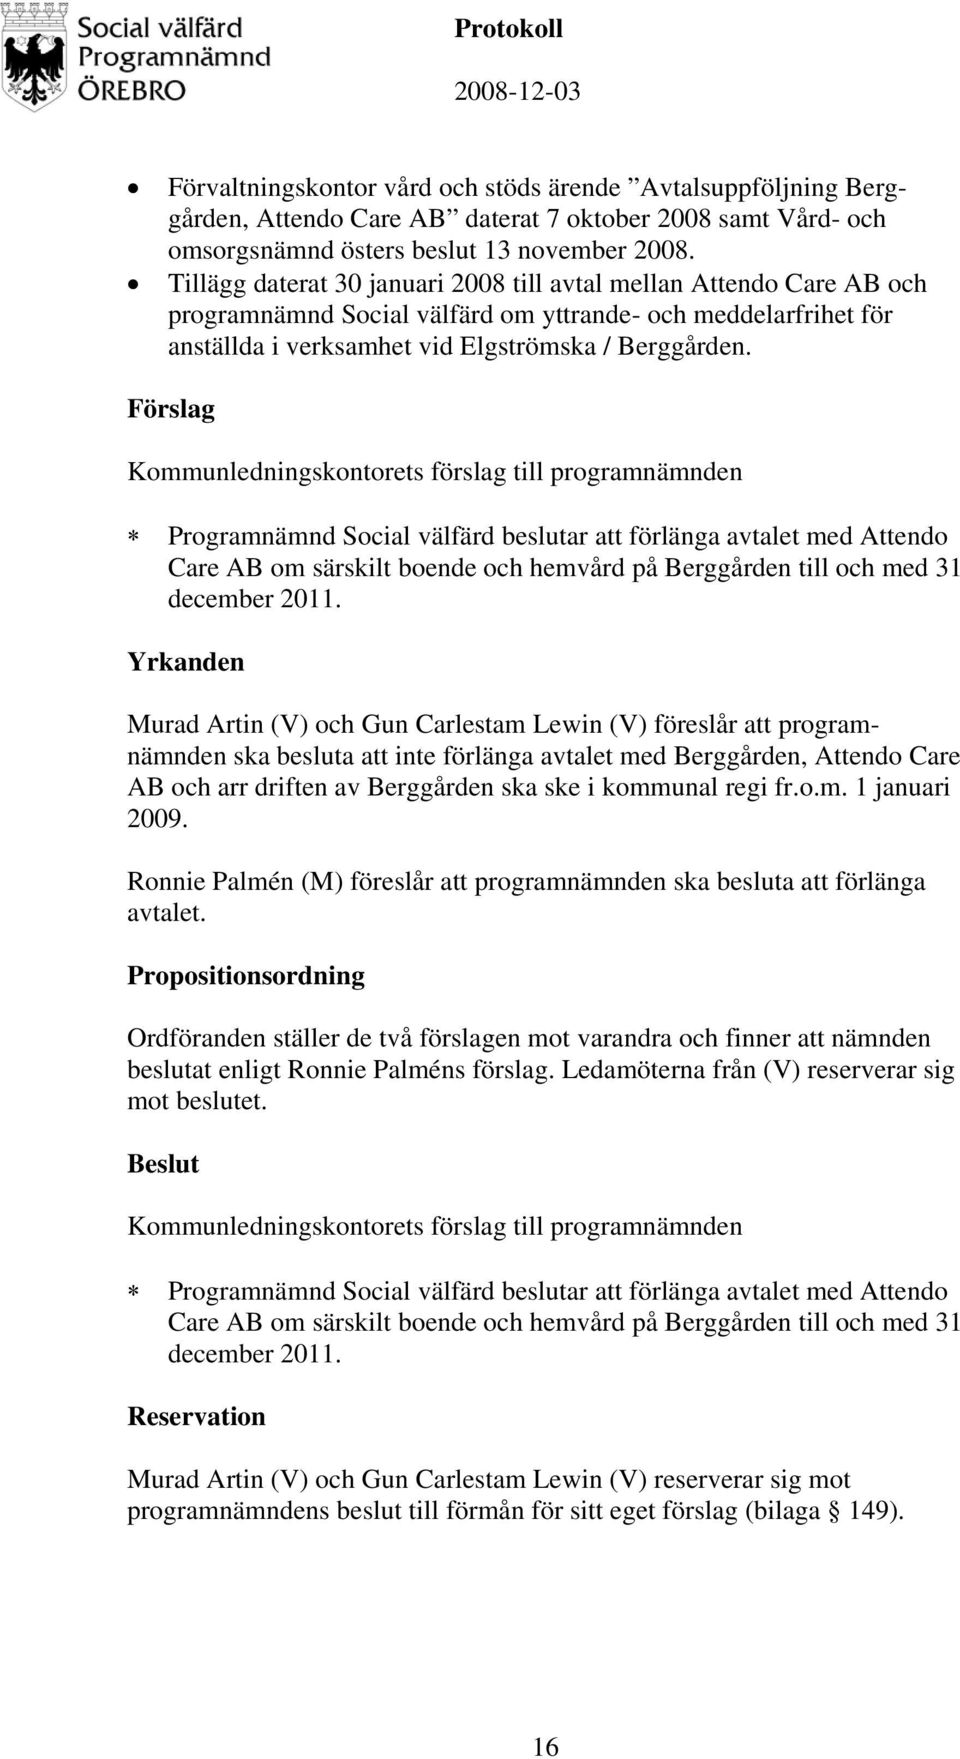 Programnämnd Social välfärd beslutar att förlänga avtalet med Attendo Care AB om särskilt boende och hemvård på Berggården till och med 31 december 2011.